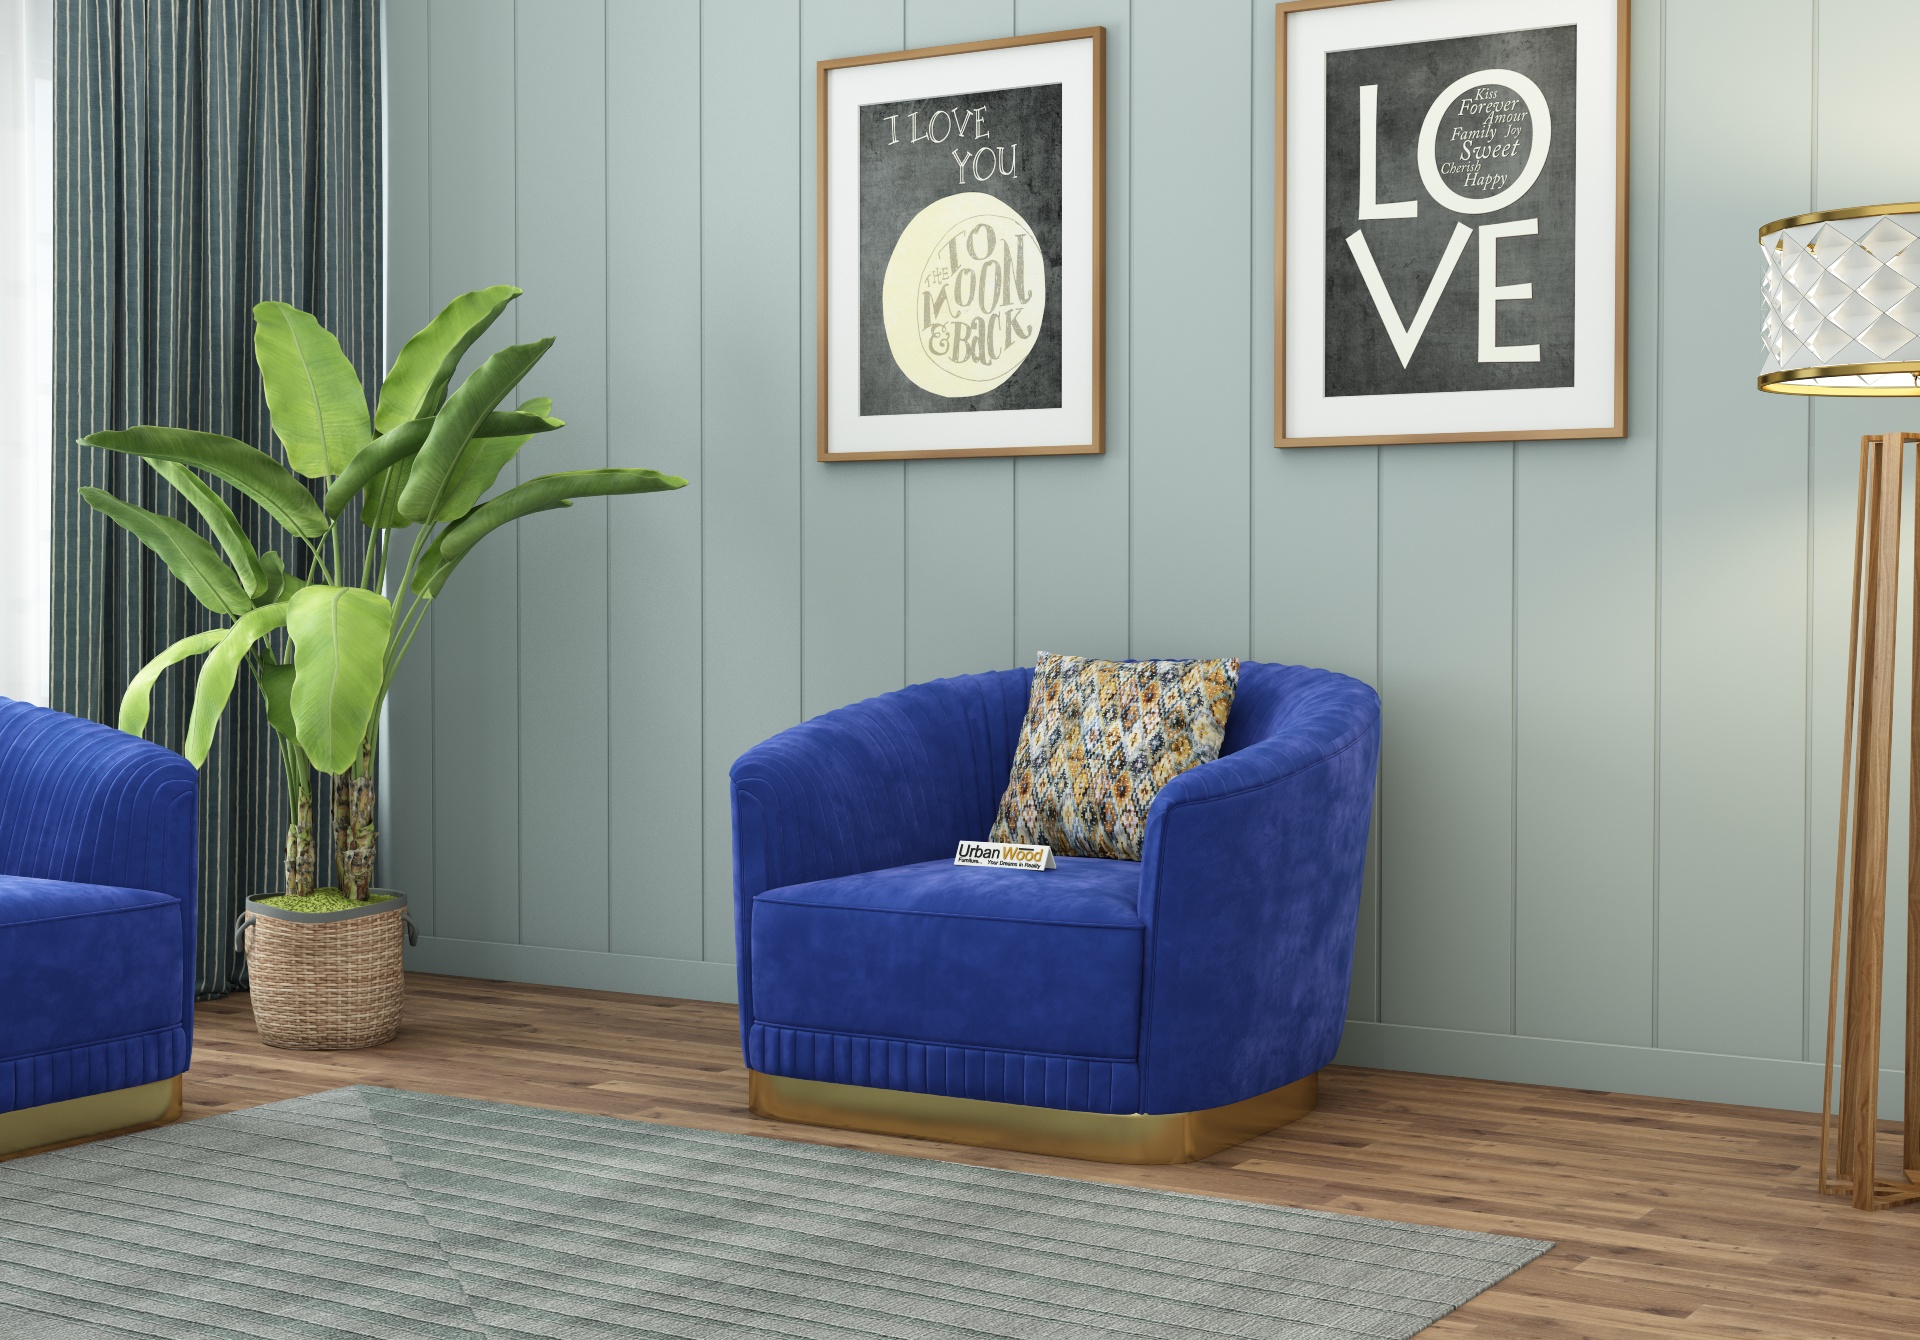 Roy 2+1+1 Seater Fabric Sofa (Velvet, Sapphire Blue)